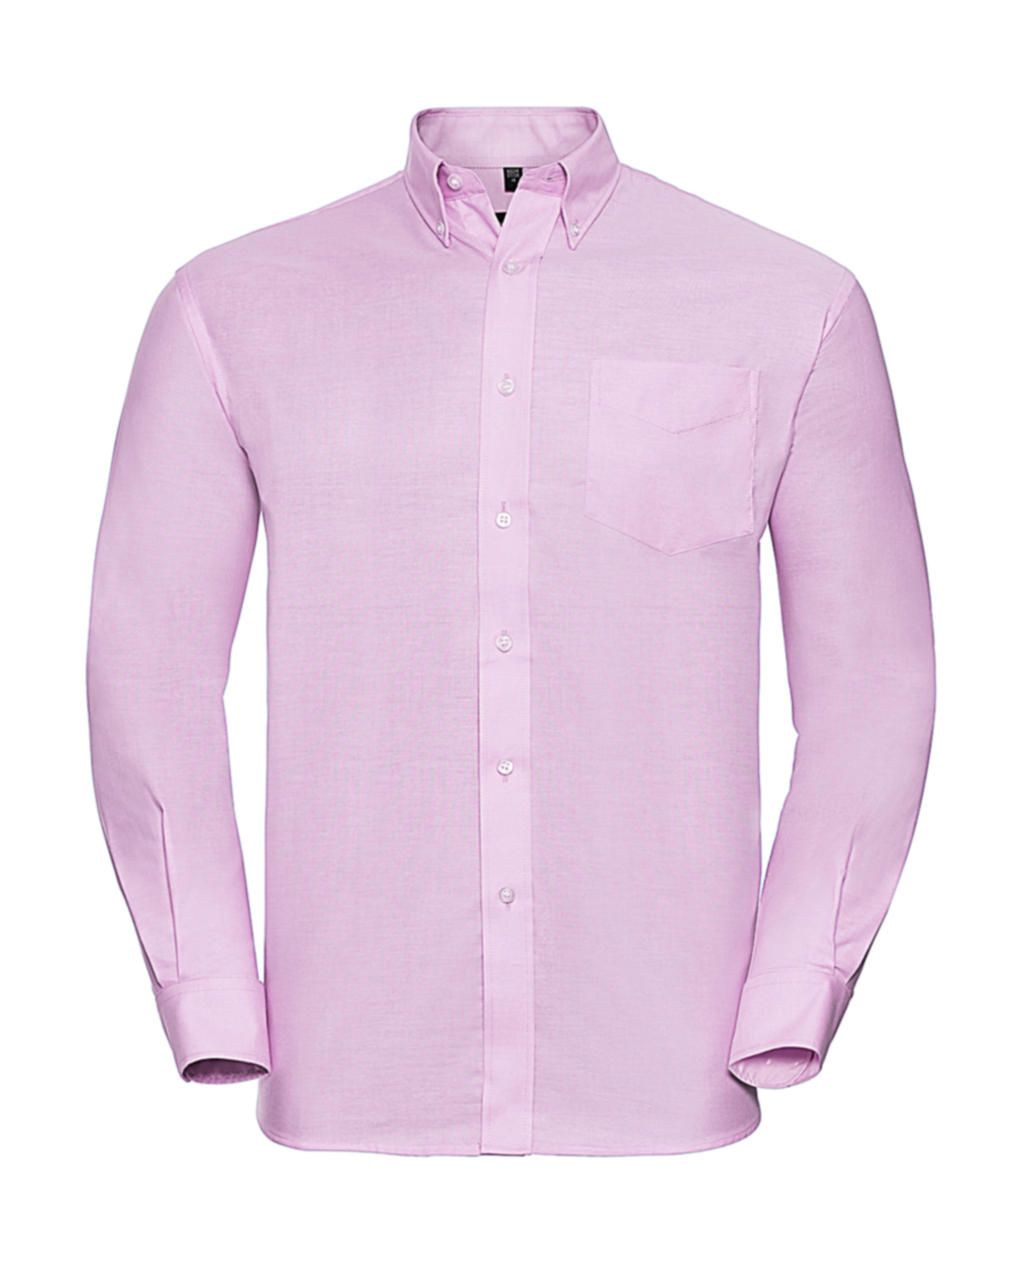 Košile Oxford s dlouhým rukávem Velikost: L, Barva: Classic Pink